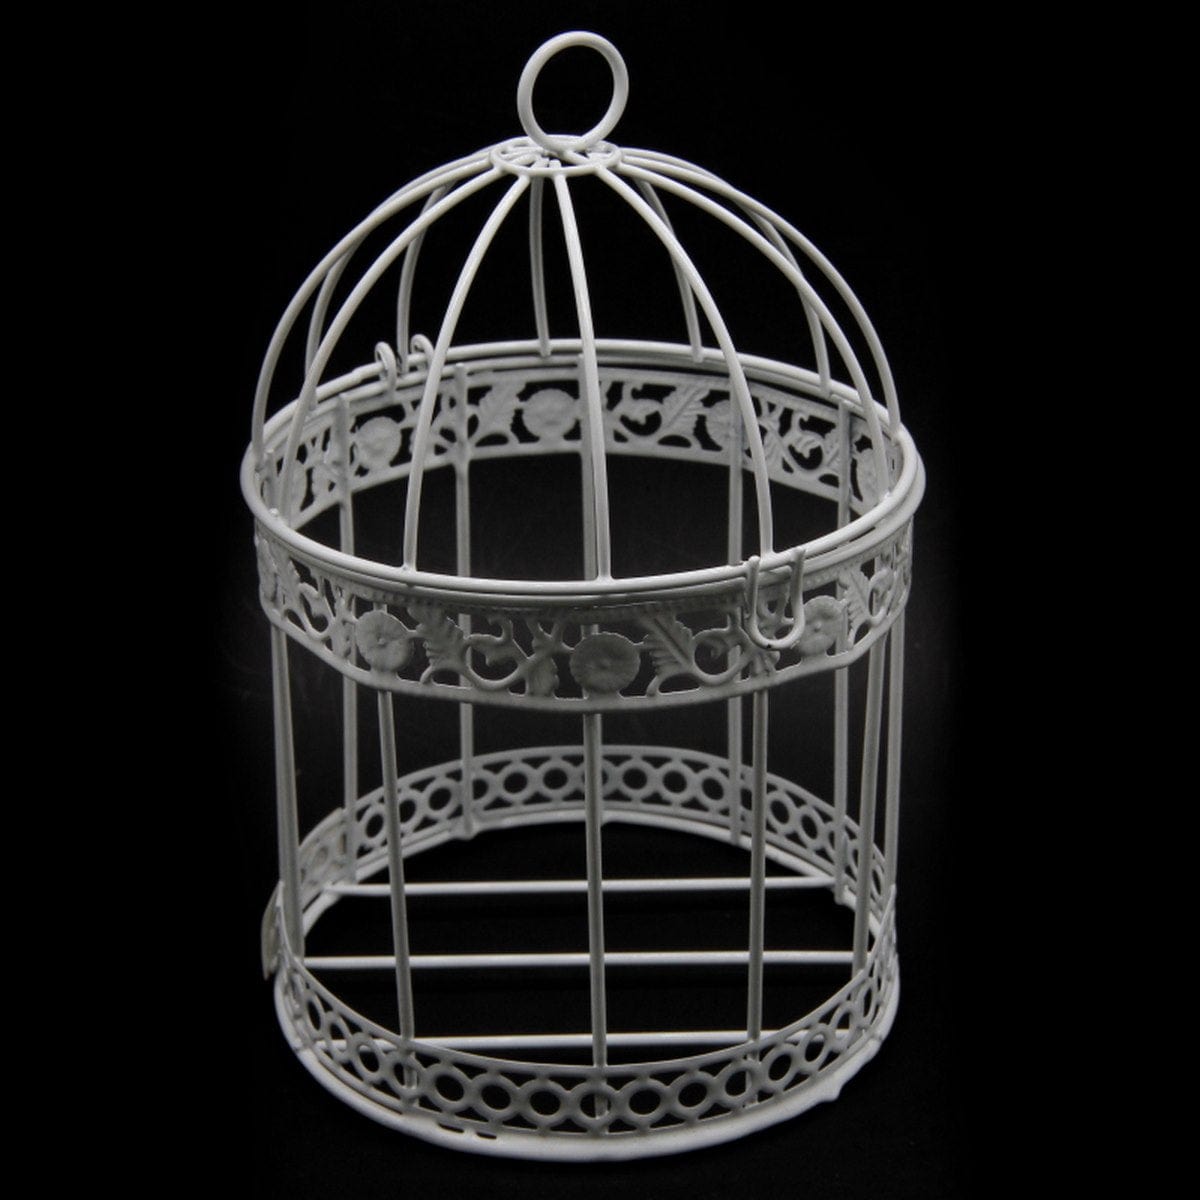 jags-mumbai Artificial Bird & Cage Bird Cage Metal 3pcs Set